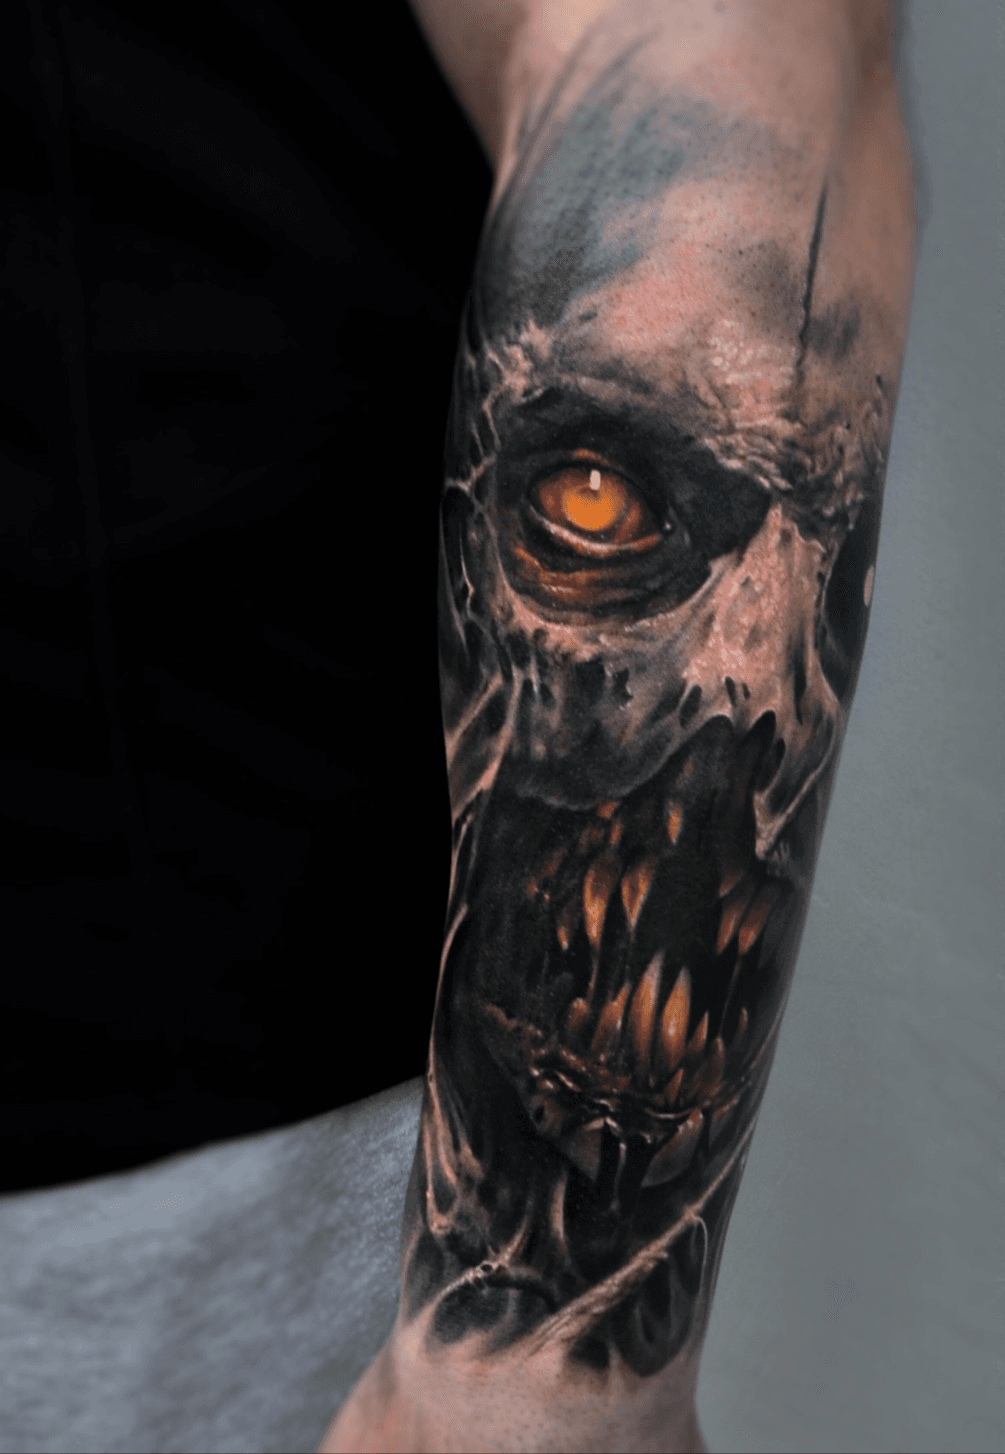 Tattoo uploaded by Vainius Anomaly • #skull #skulltattoo #scifi #horror  #evil #tattoo #vainiusanomaly #realism #realistic #realistictattoo #color  #colortattoo #demon • Tattoodo